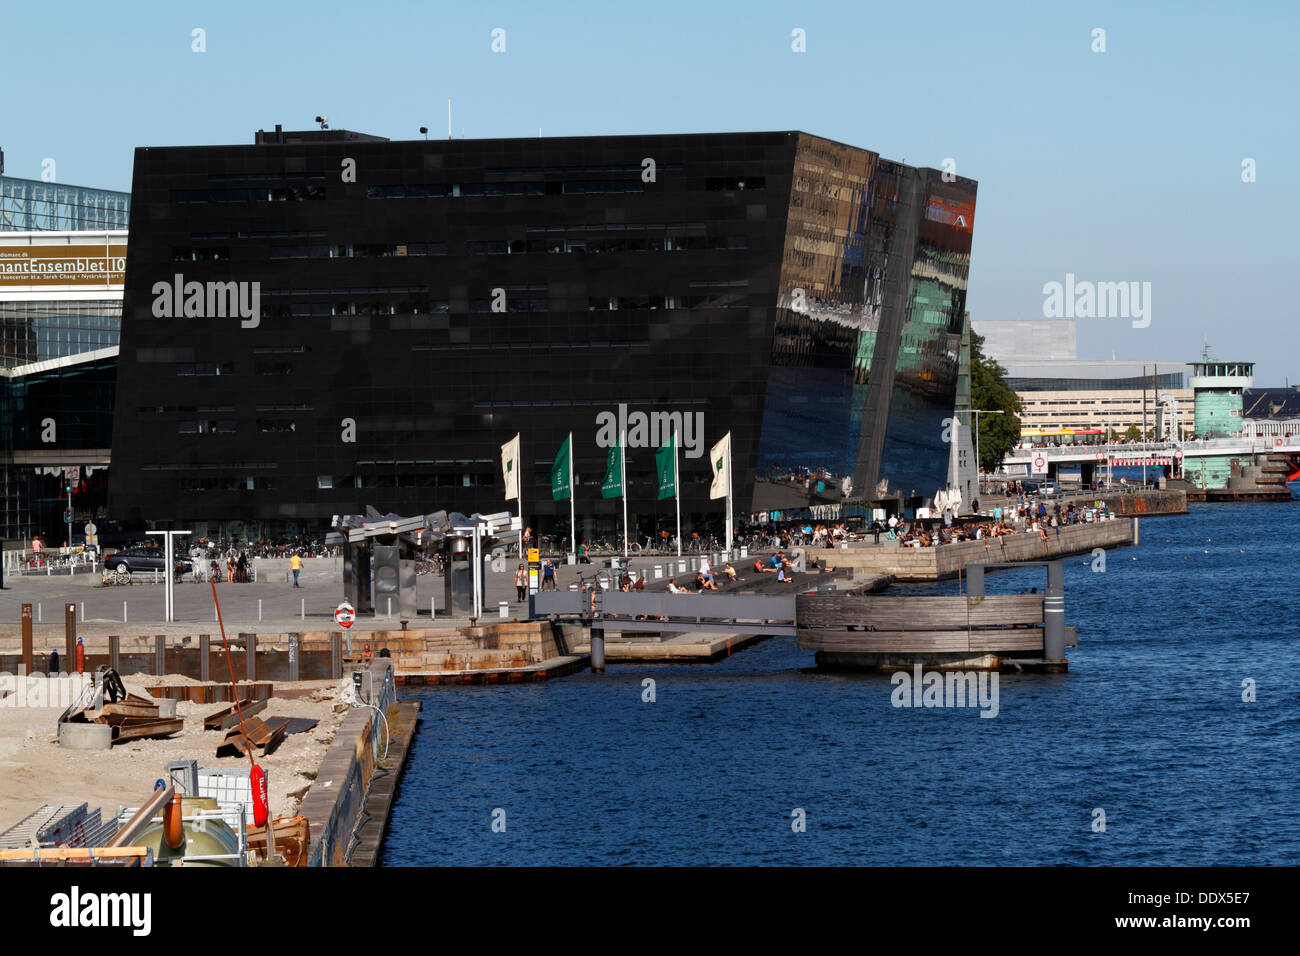 Le Black Diamond, Den Sorte Diamant, au bord de l'eau à Copenhague, Danemark. Le pont Knippelsbro juste en arrière-plan. Banque D'Images